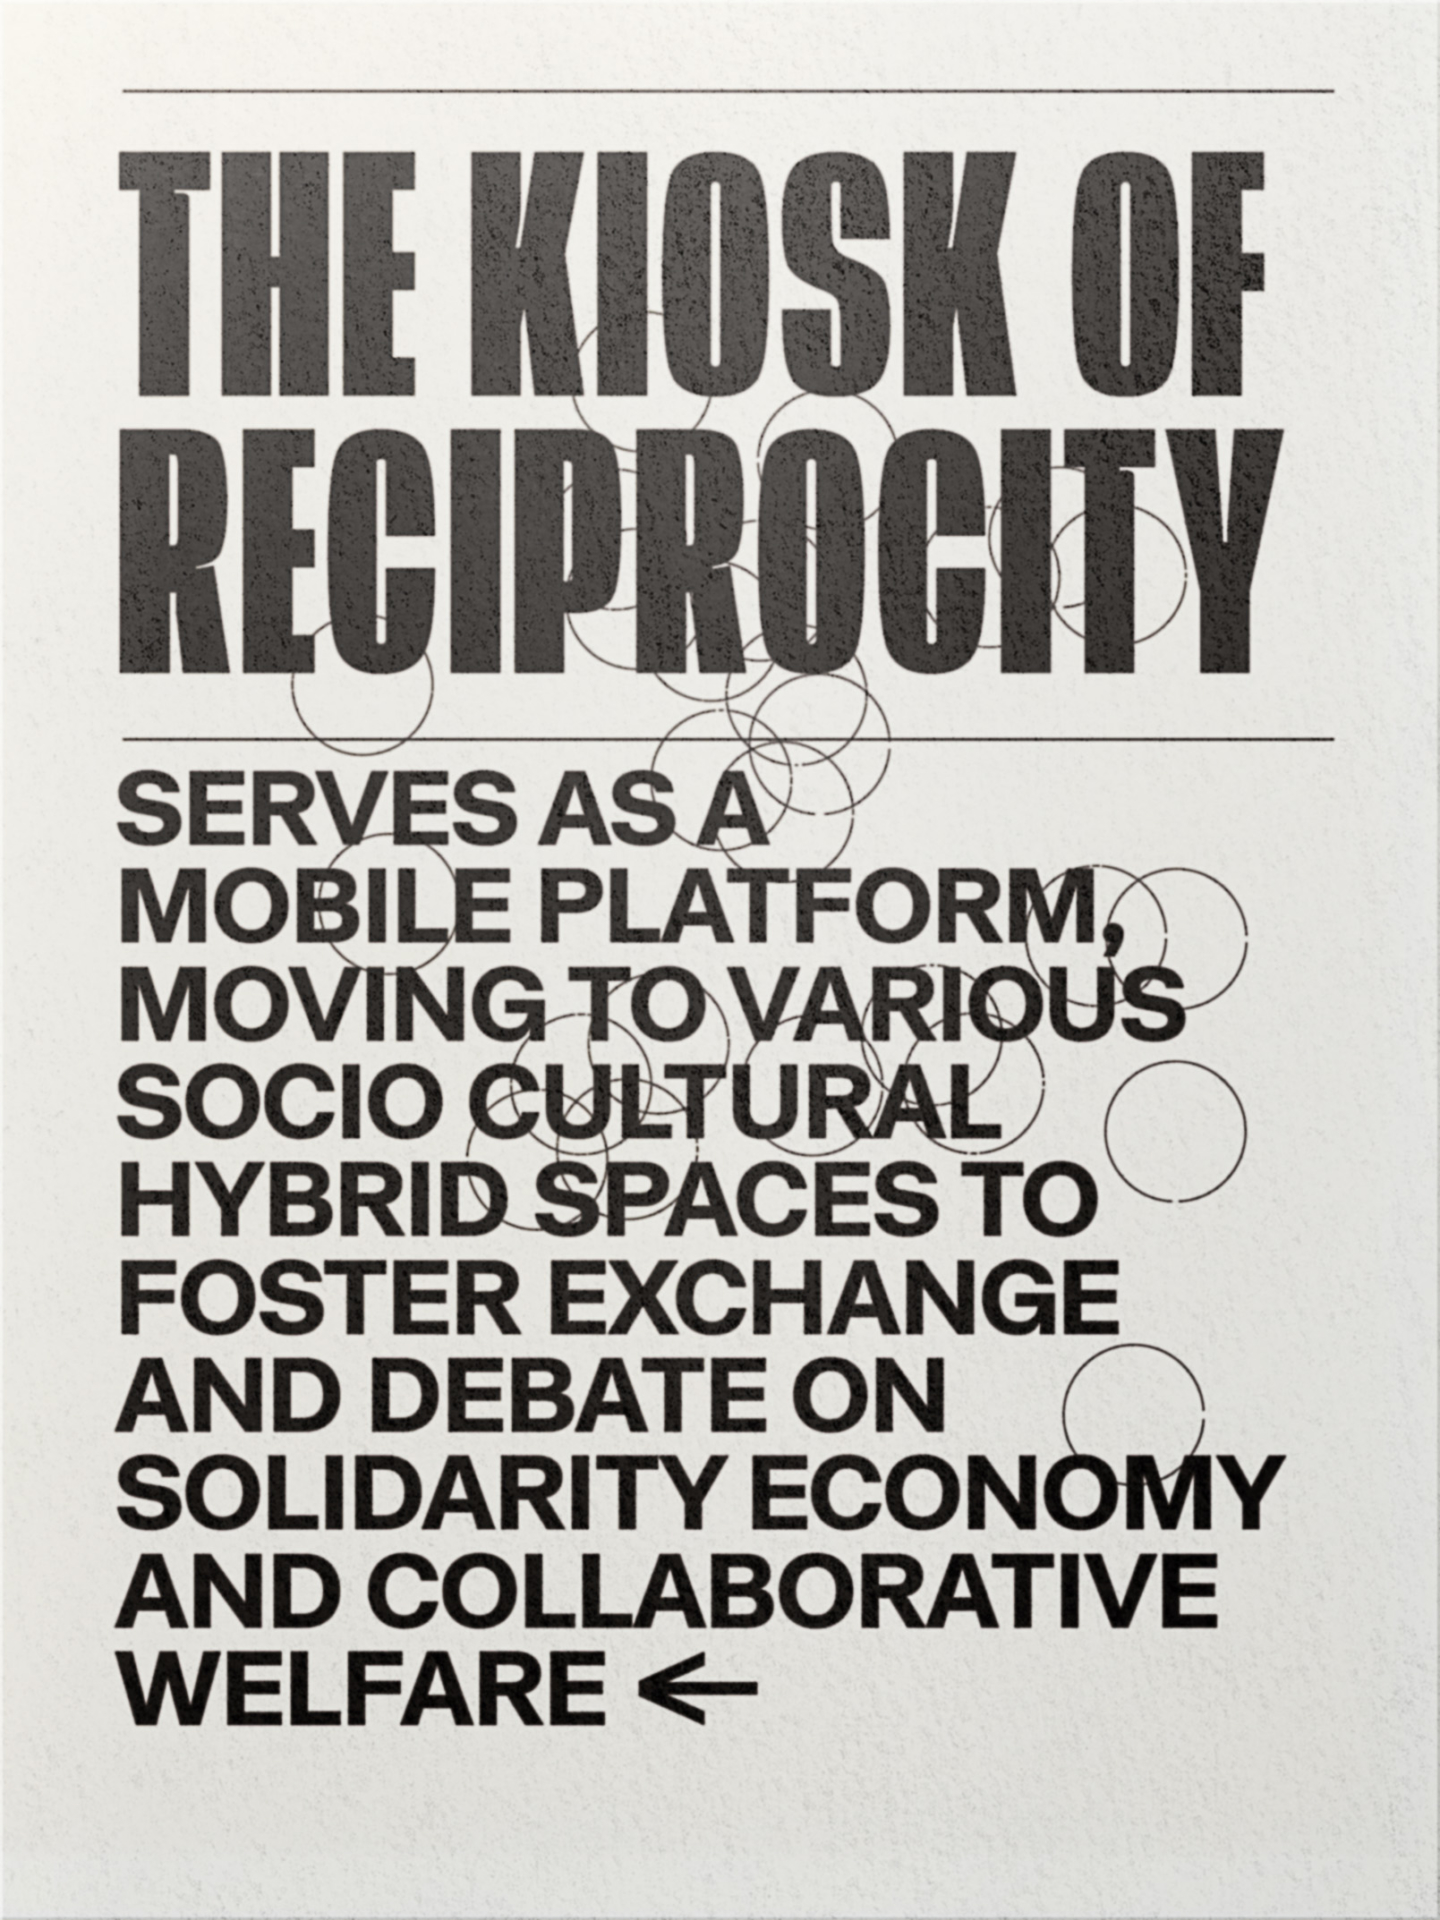 Kiosk of Reciprocity